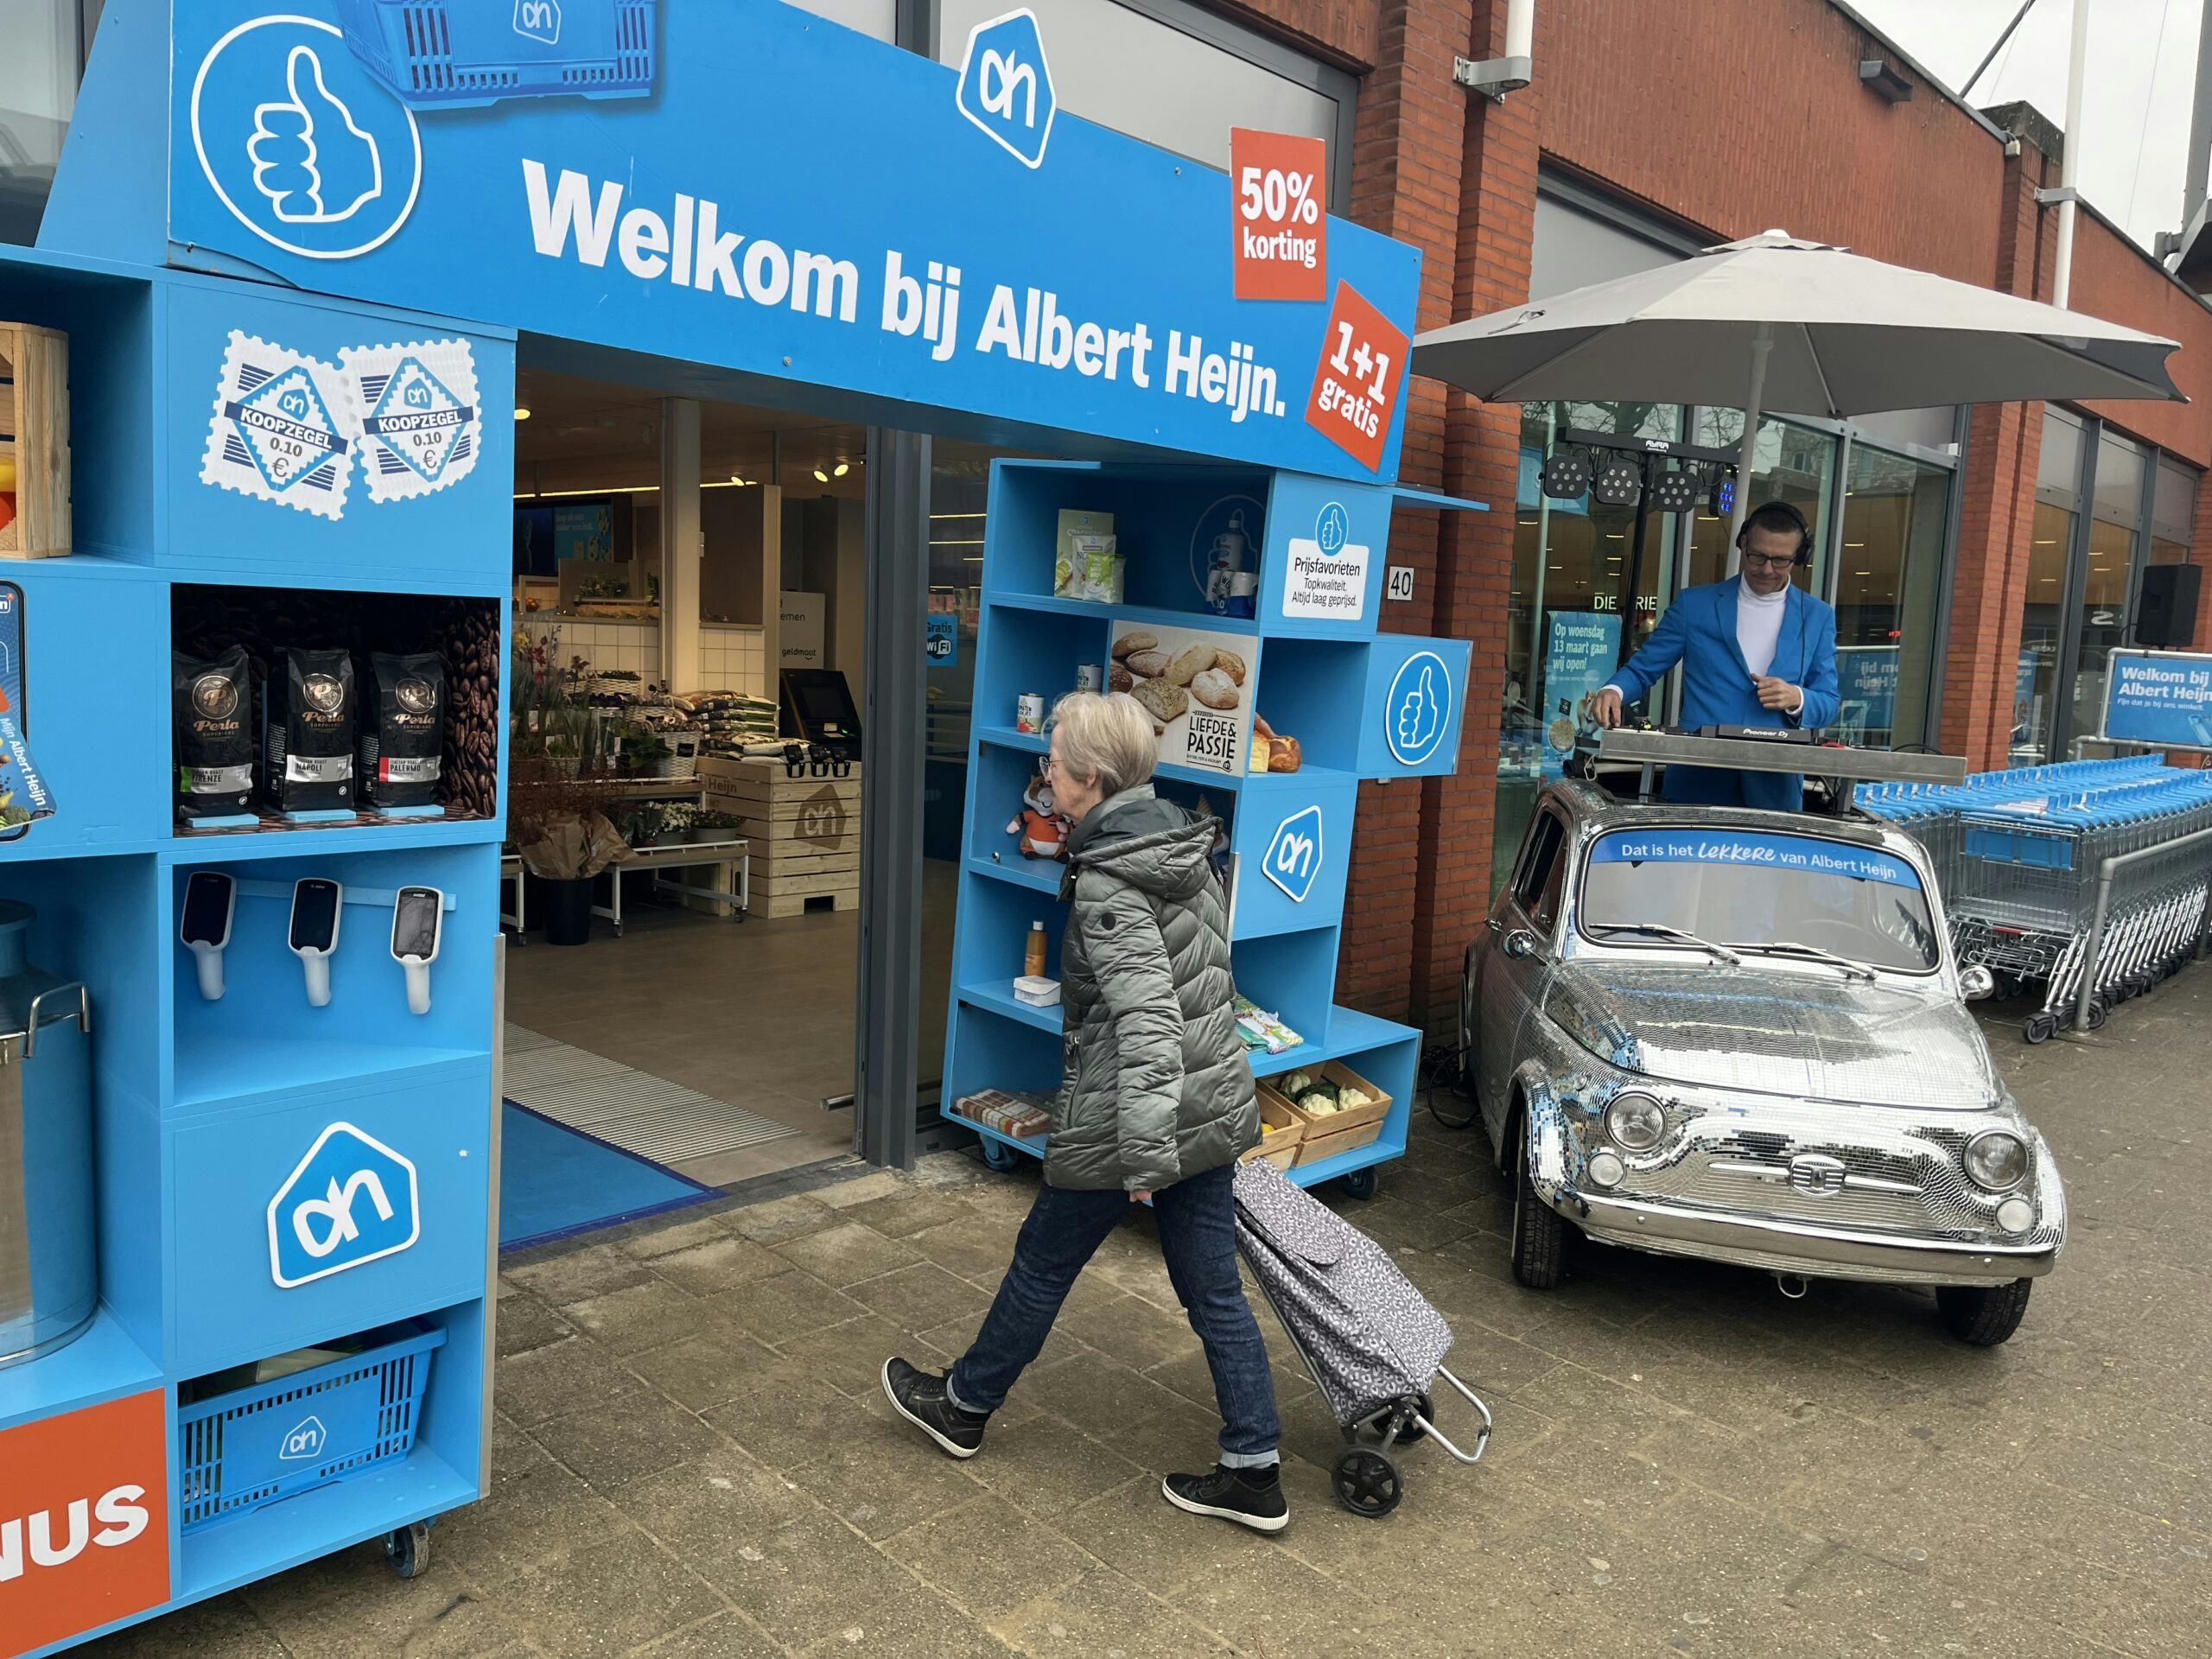 Een klant wandelt de pas geopende Albert Heijn Jan Linders binnen in Blerick, Venlo. Foto: Distrifood